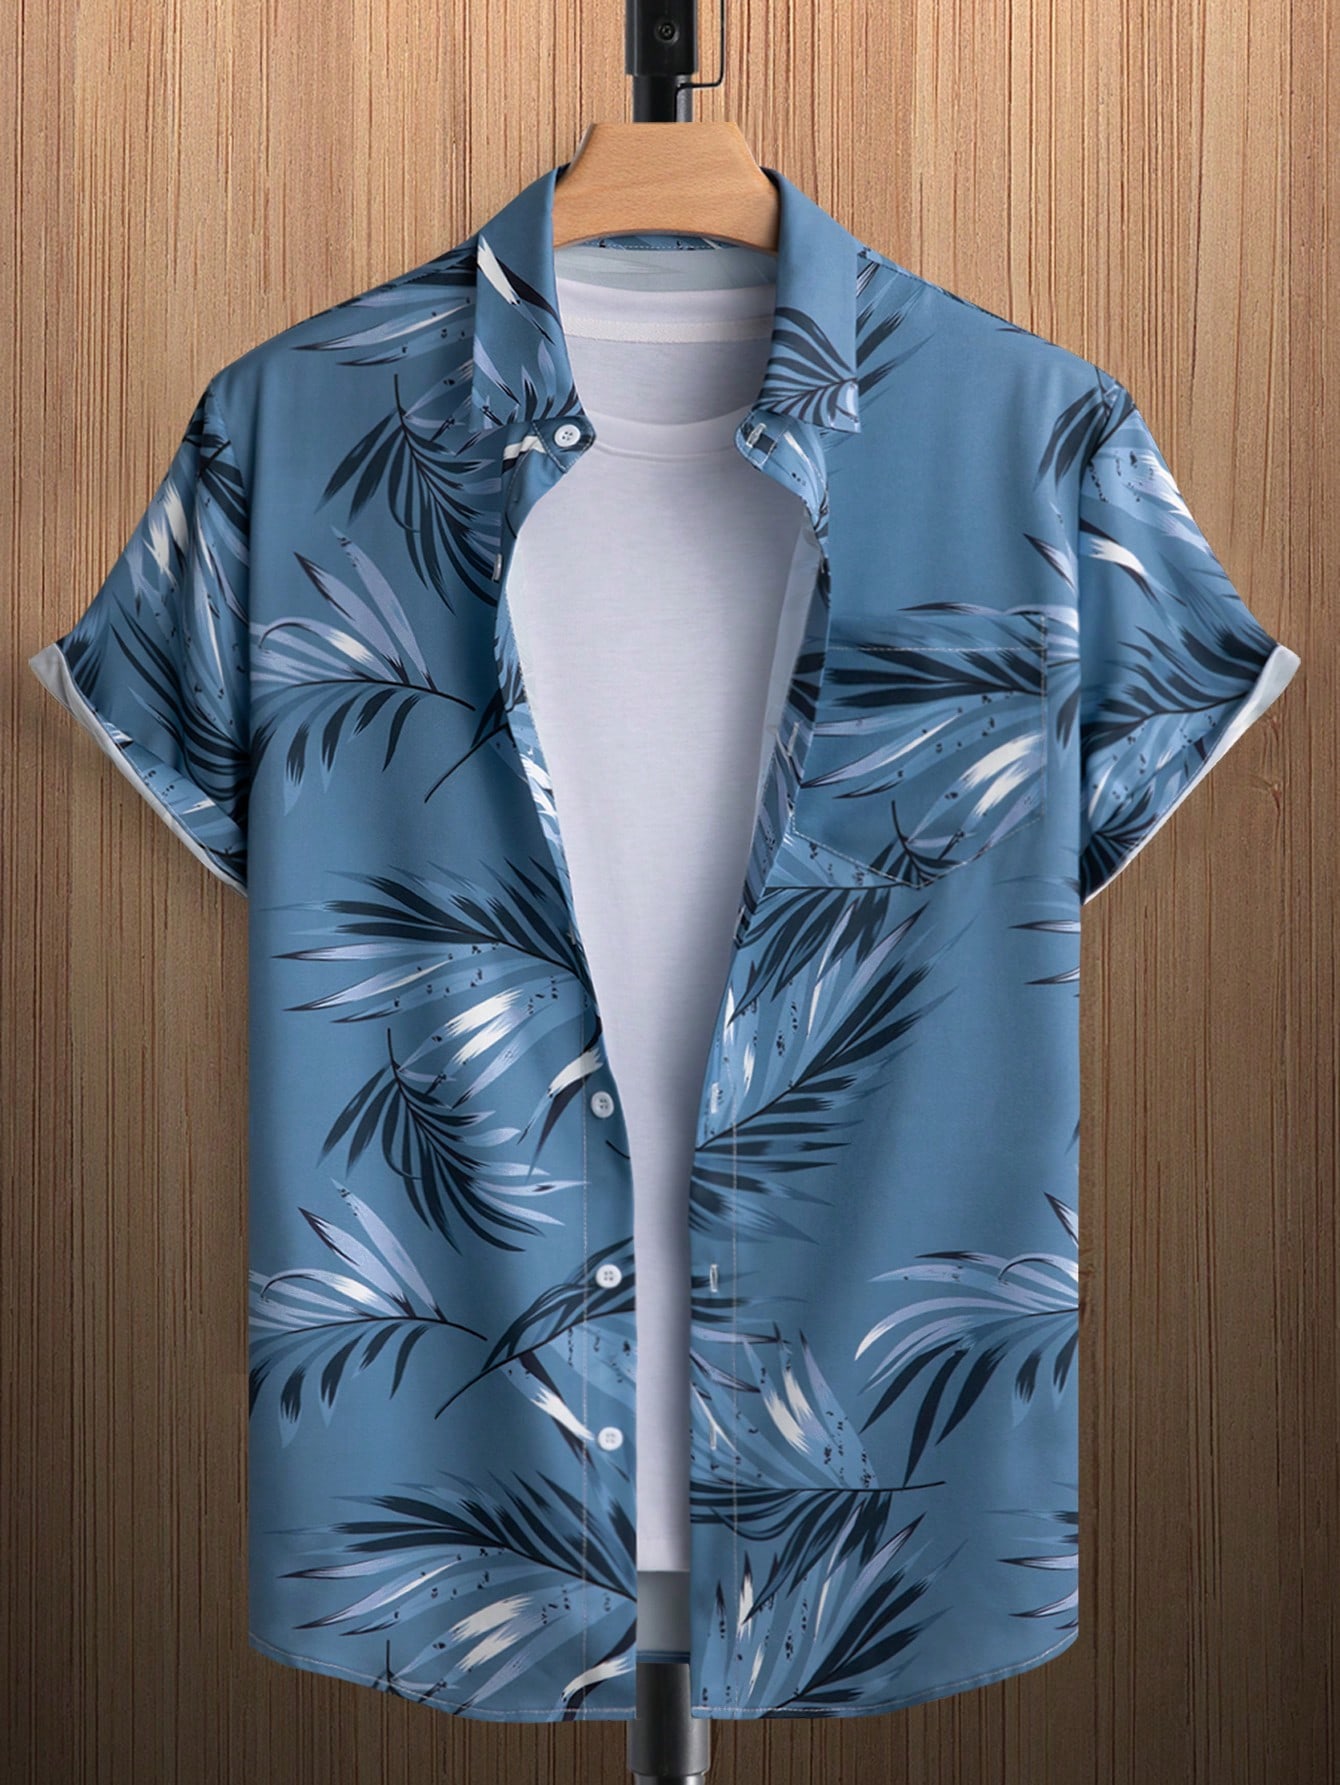 цена Мужская рубашка с короткими рукавами и принтом листьев на пуговицах Manfinity RSRT, пыльный синий